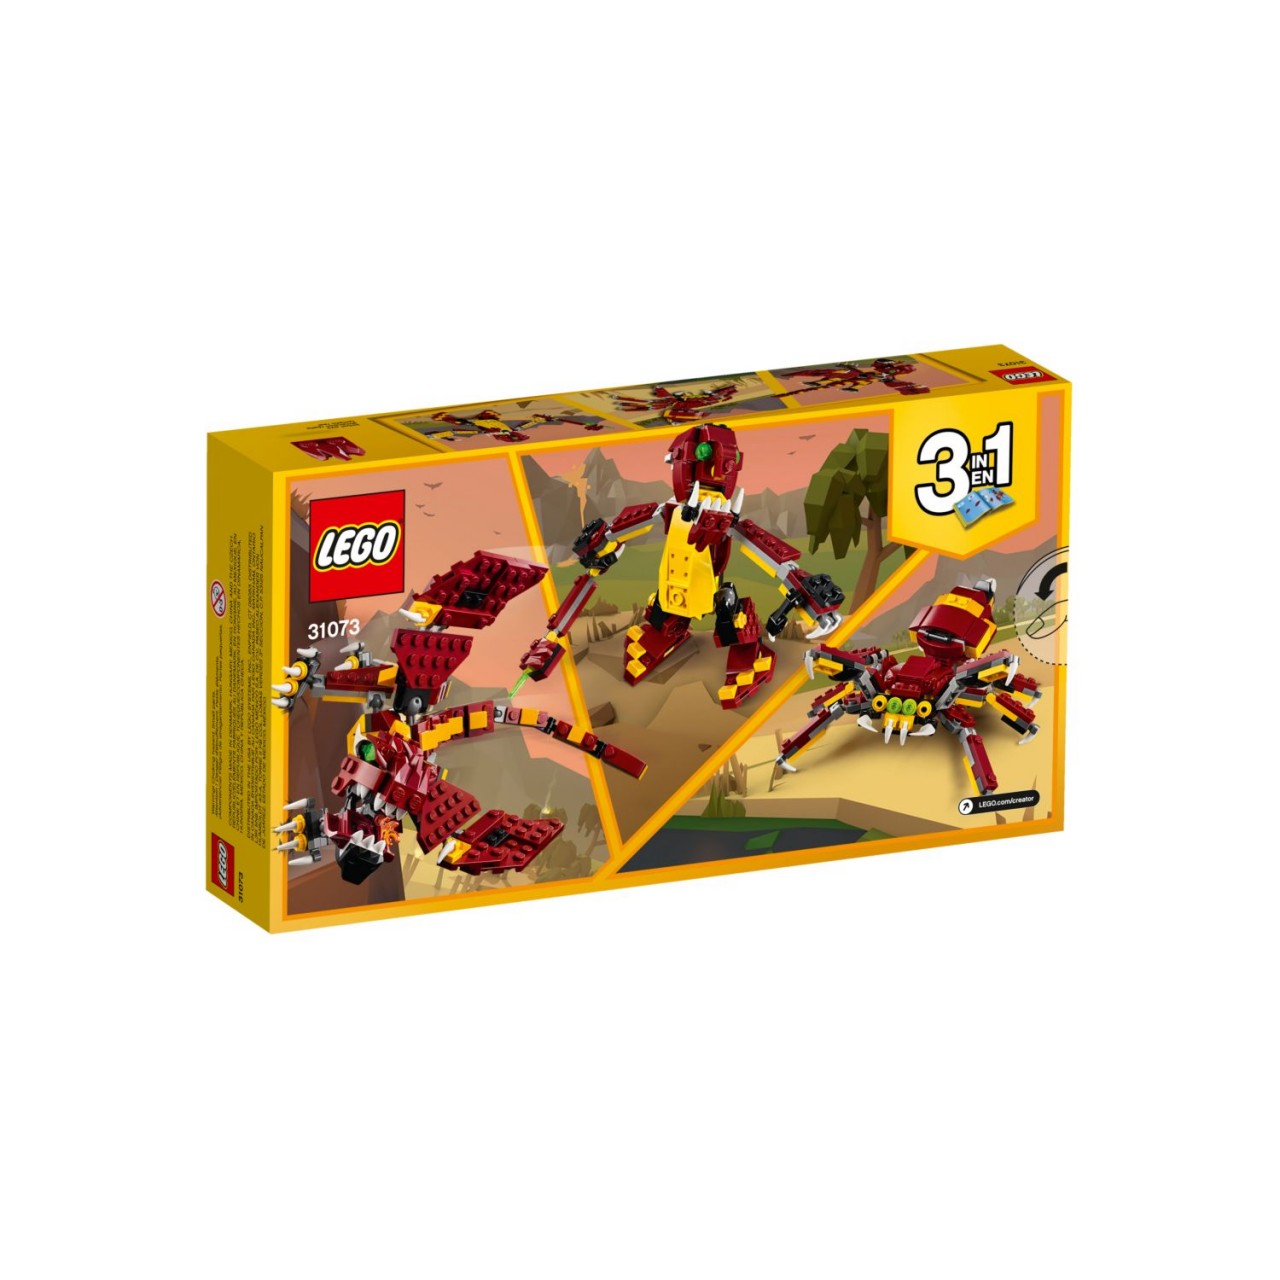 LEGO CREATOR 31073 Fabelwesen